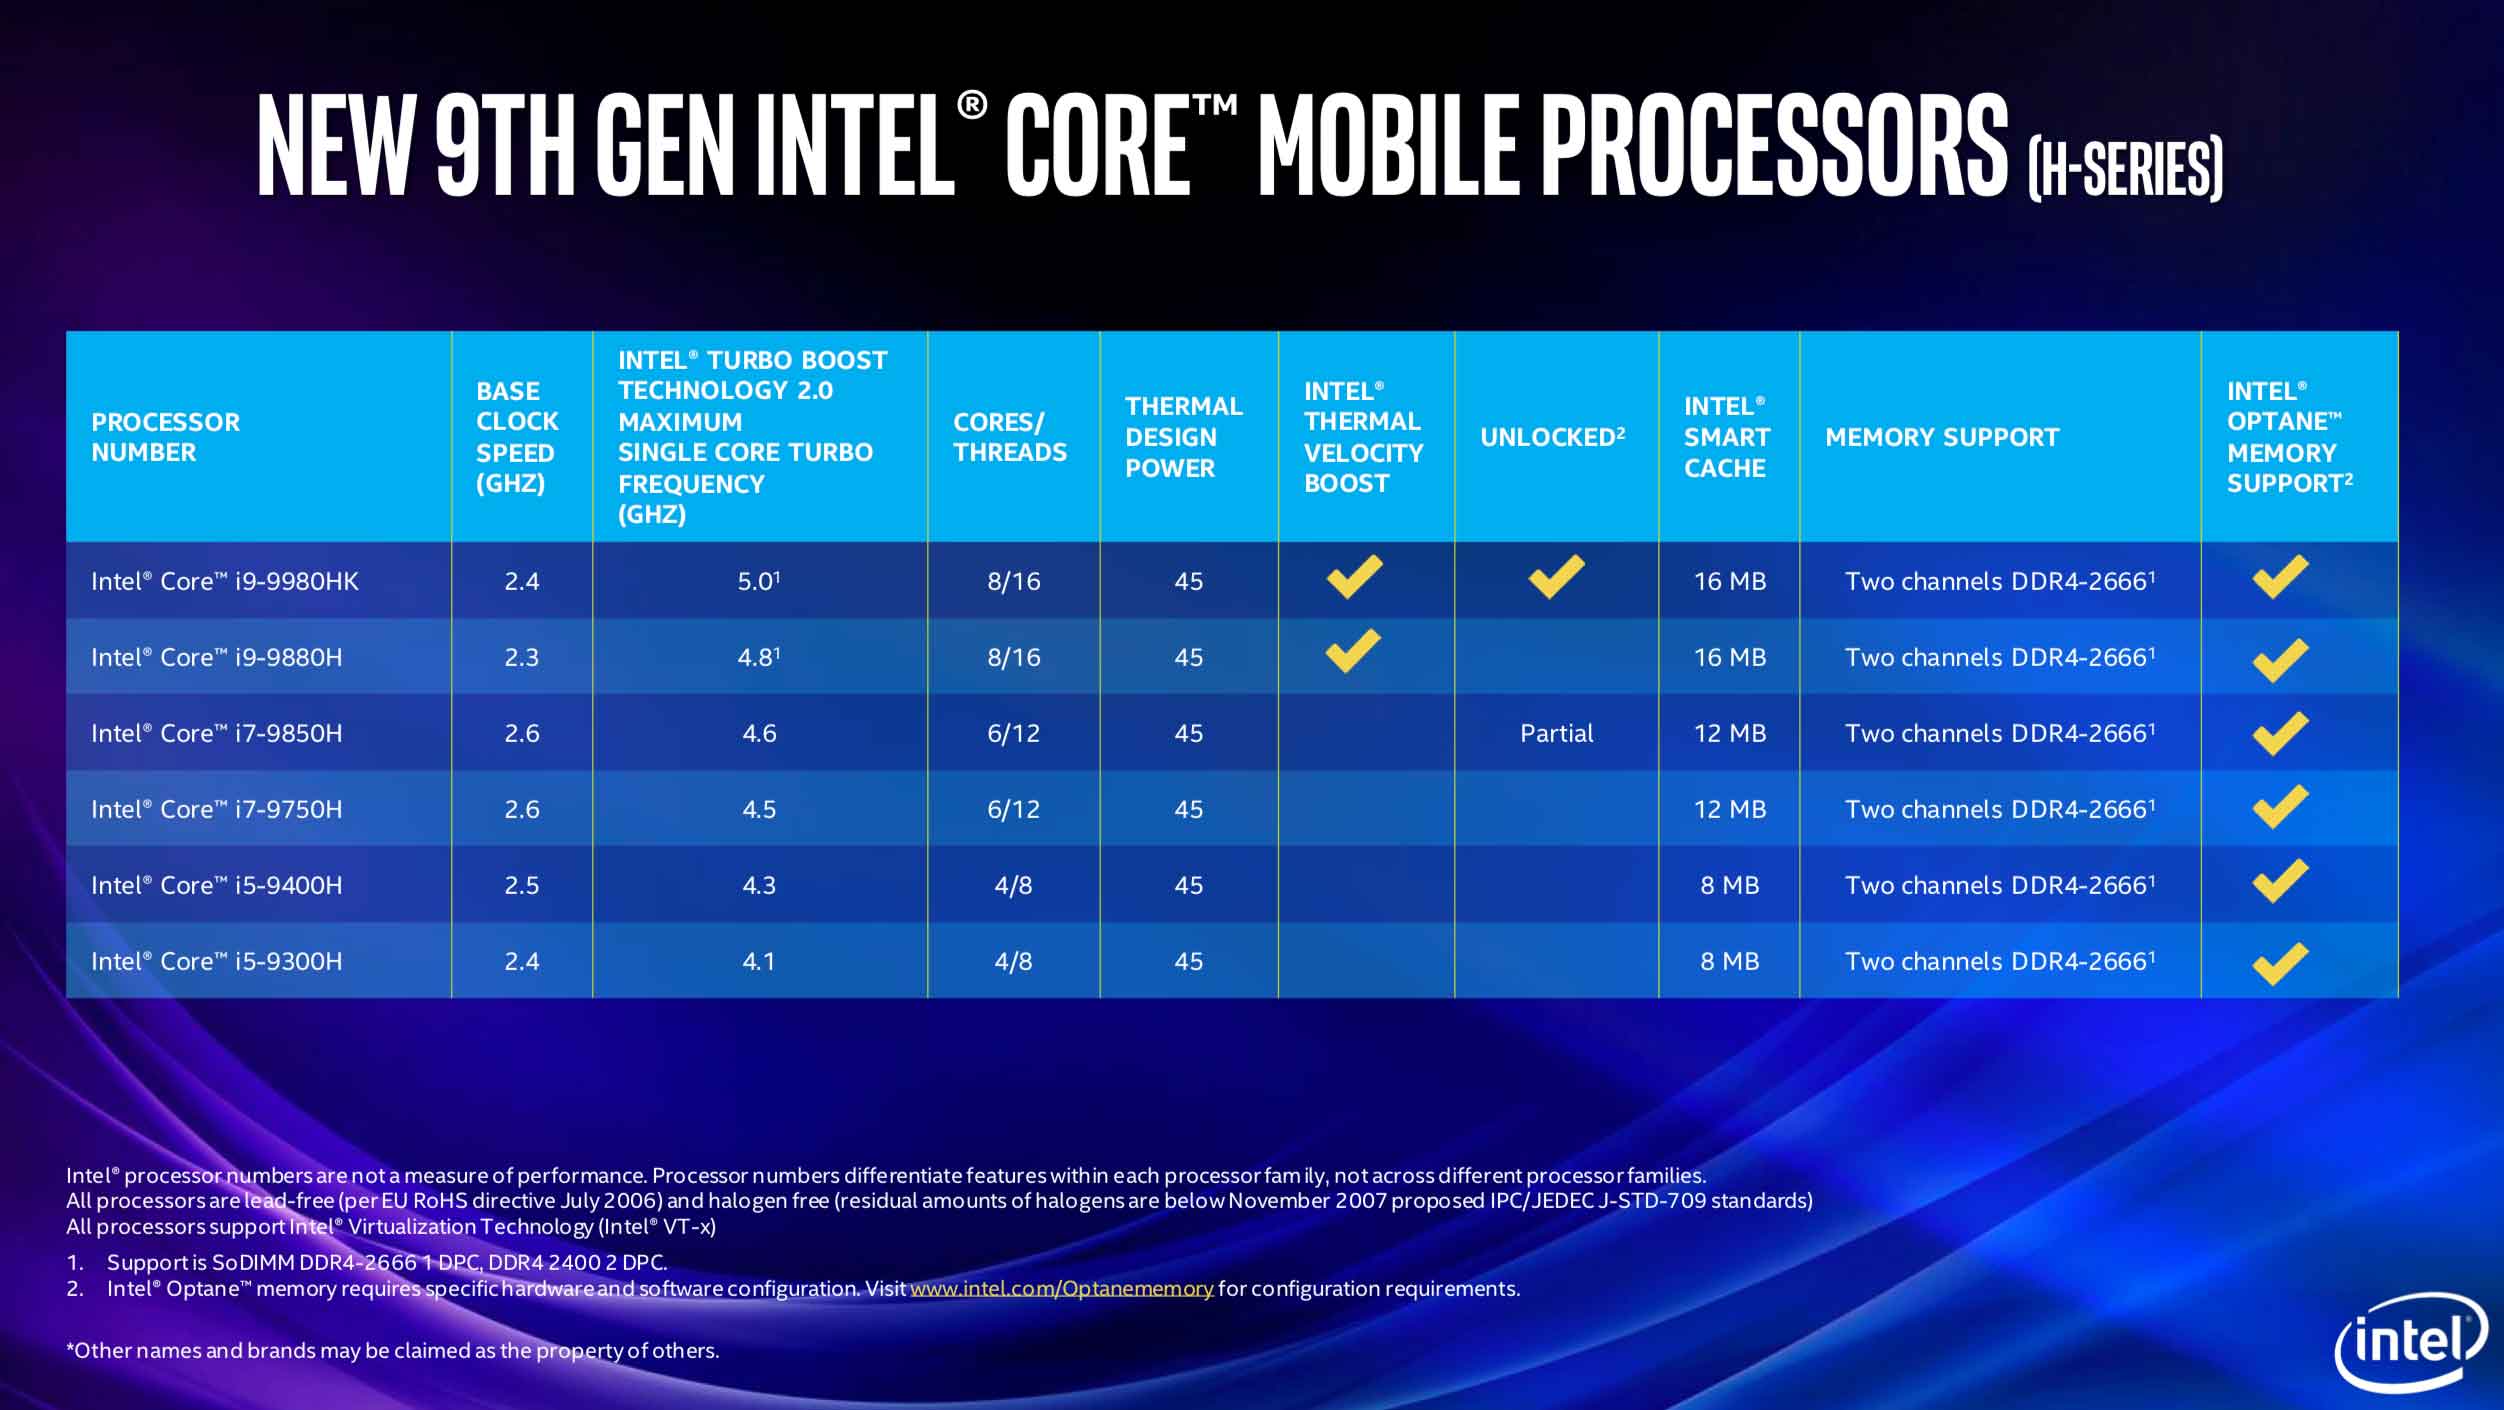 Intel ha aggiornato le CPU serie H usate nei MacBook Pro 2018